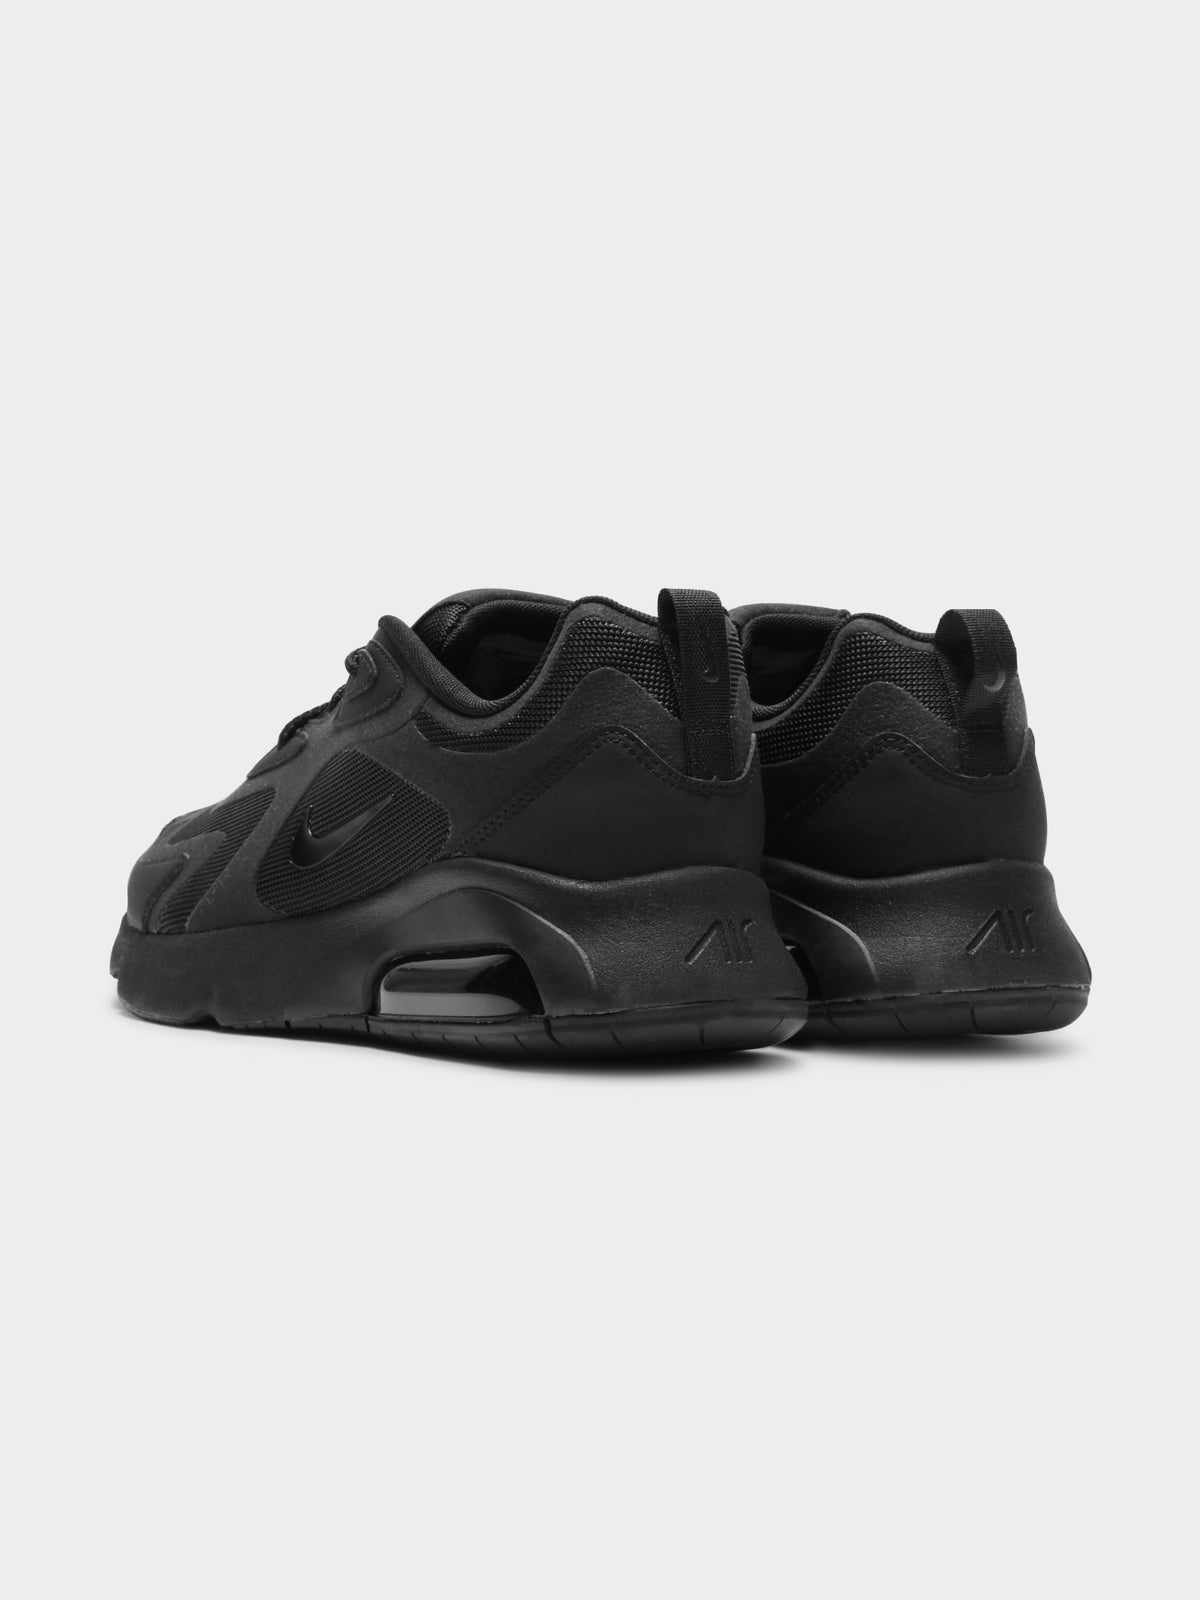 Mens Nike Air Max 200 Sneakers in Black